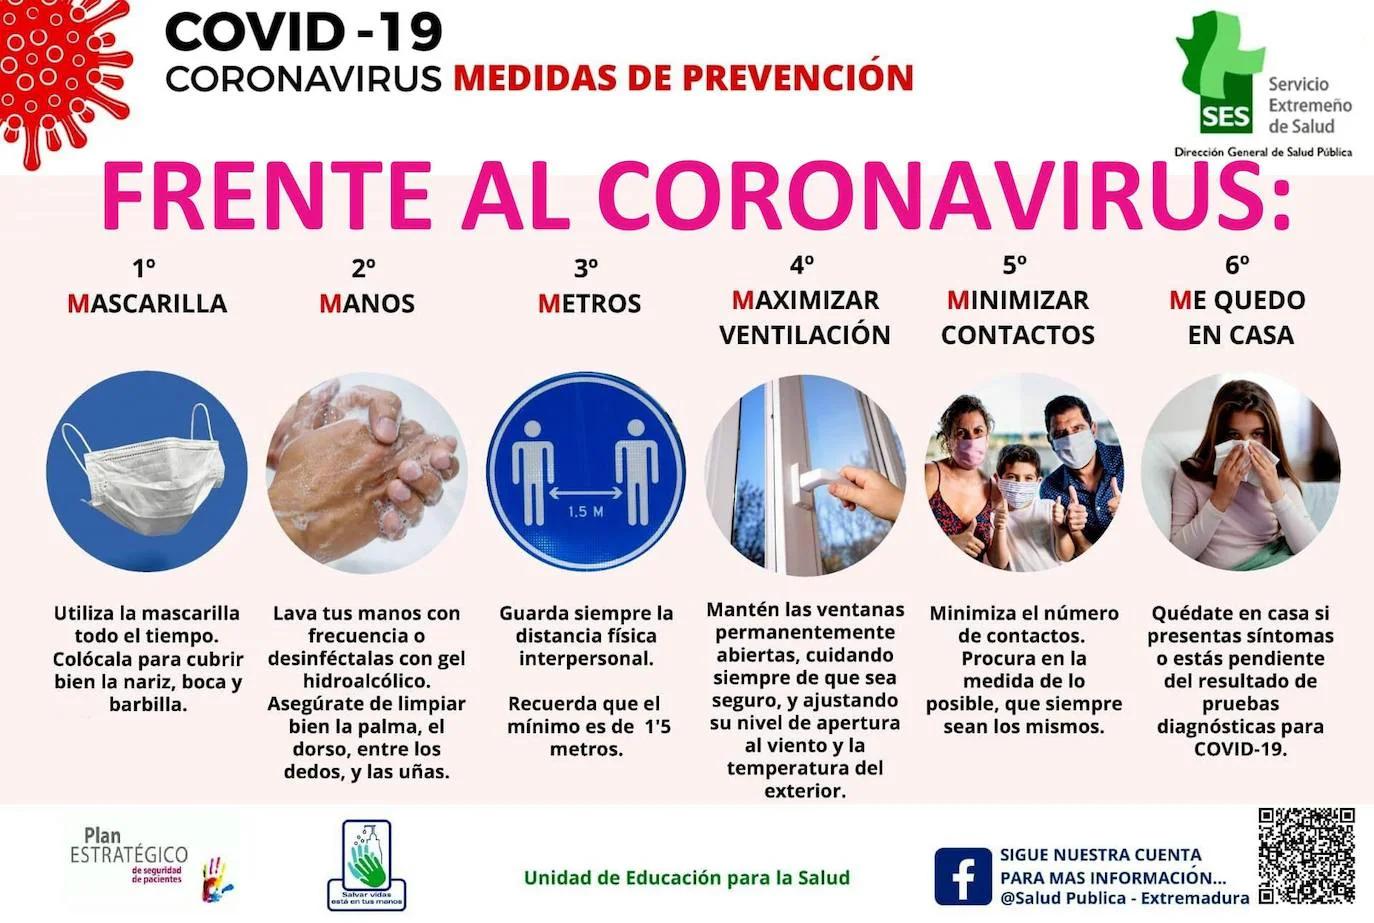 Sanidad comunica 21 nuevos positivos de Covid-19 en la localidad